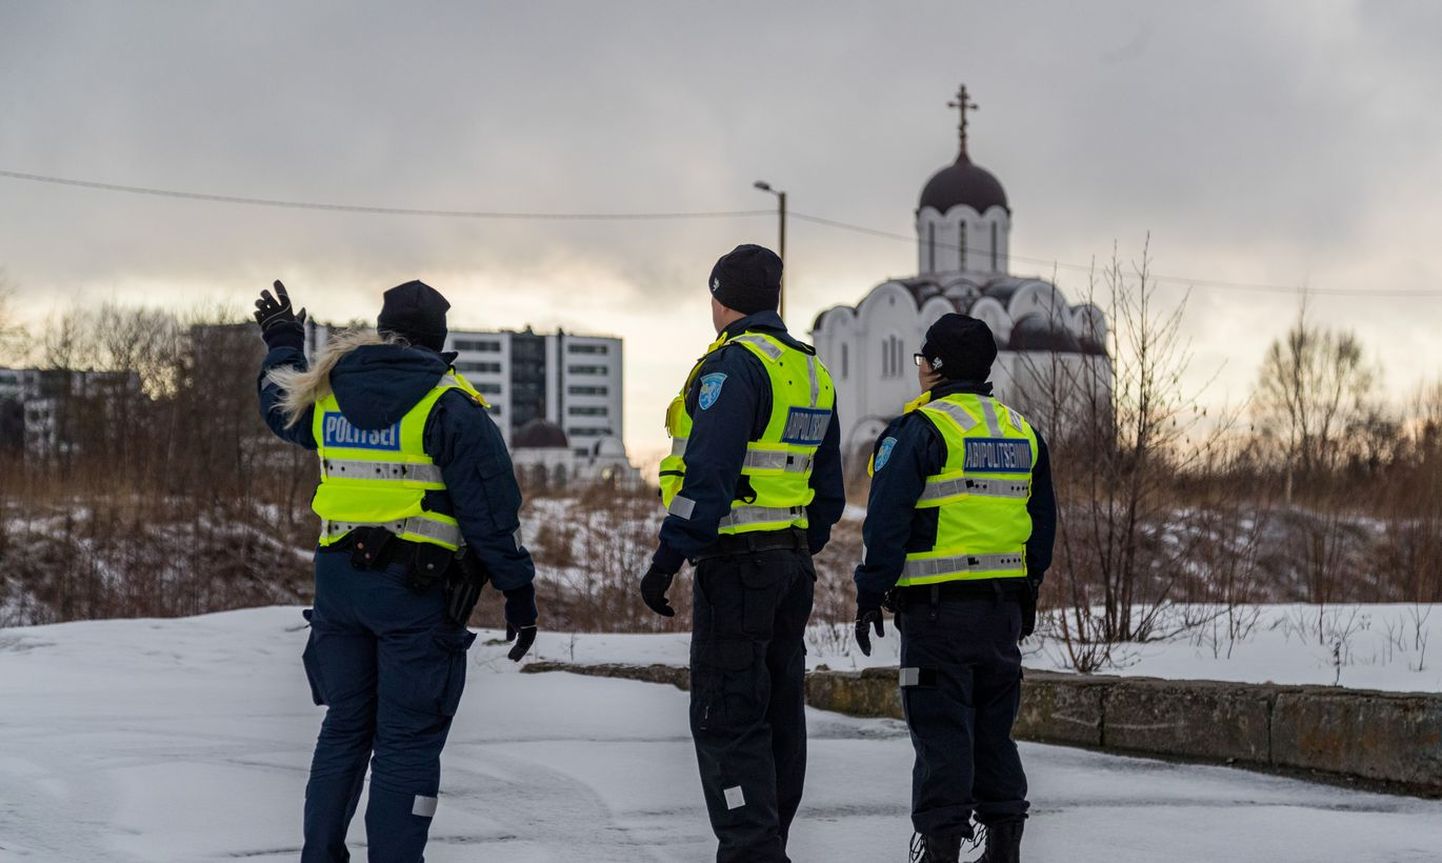 Поскольку действующий закон не разрешает получать и пенсию, и работать дальше, полиция Эстонии рискует остаться без четверти своих сотрудников - 1000 человек.